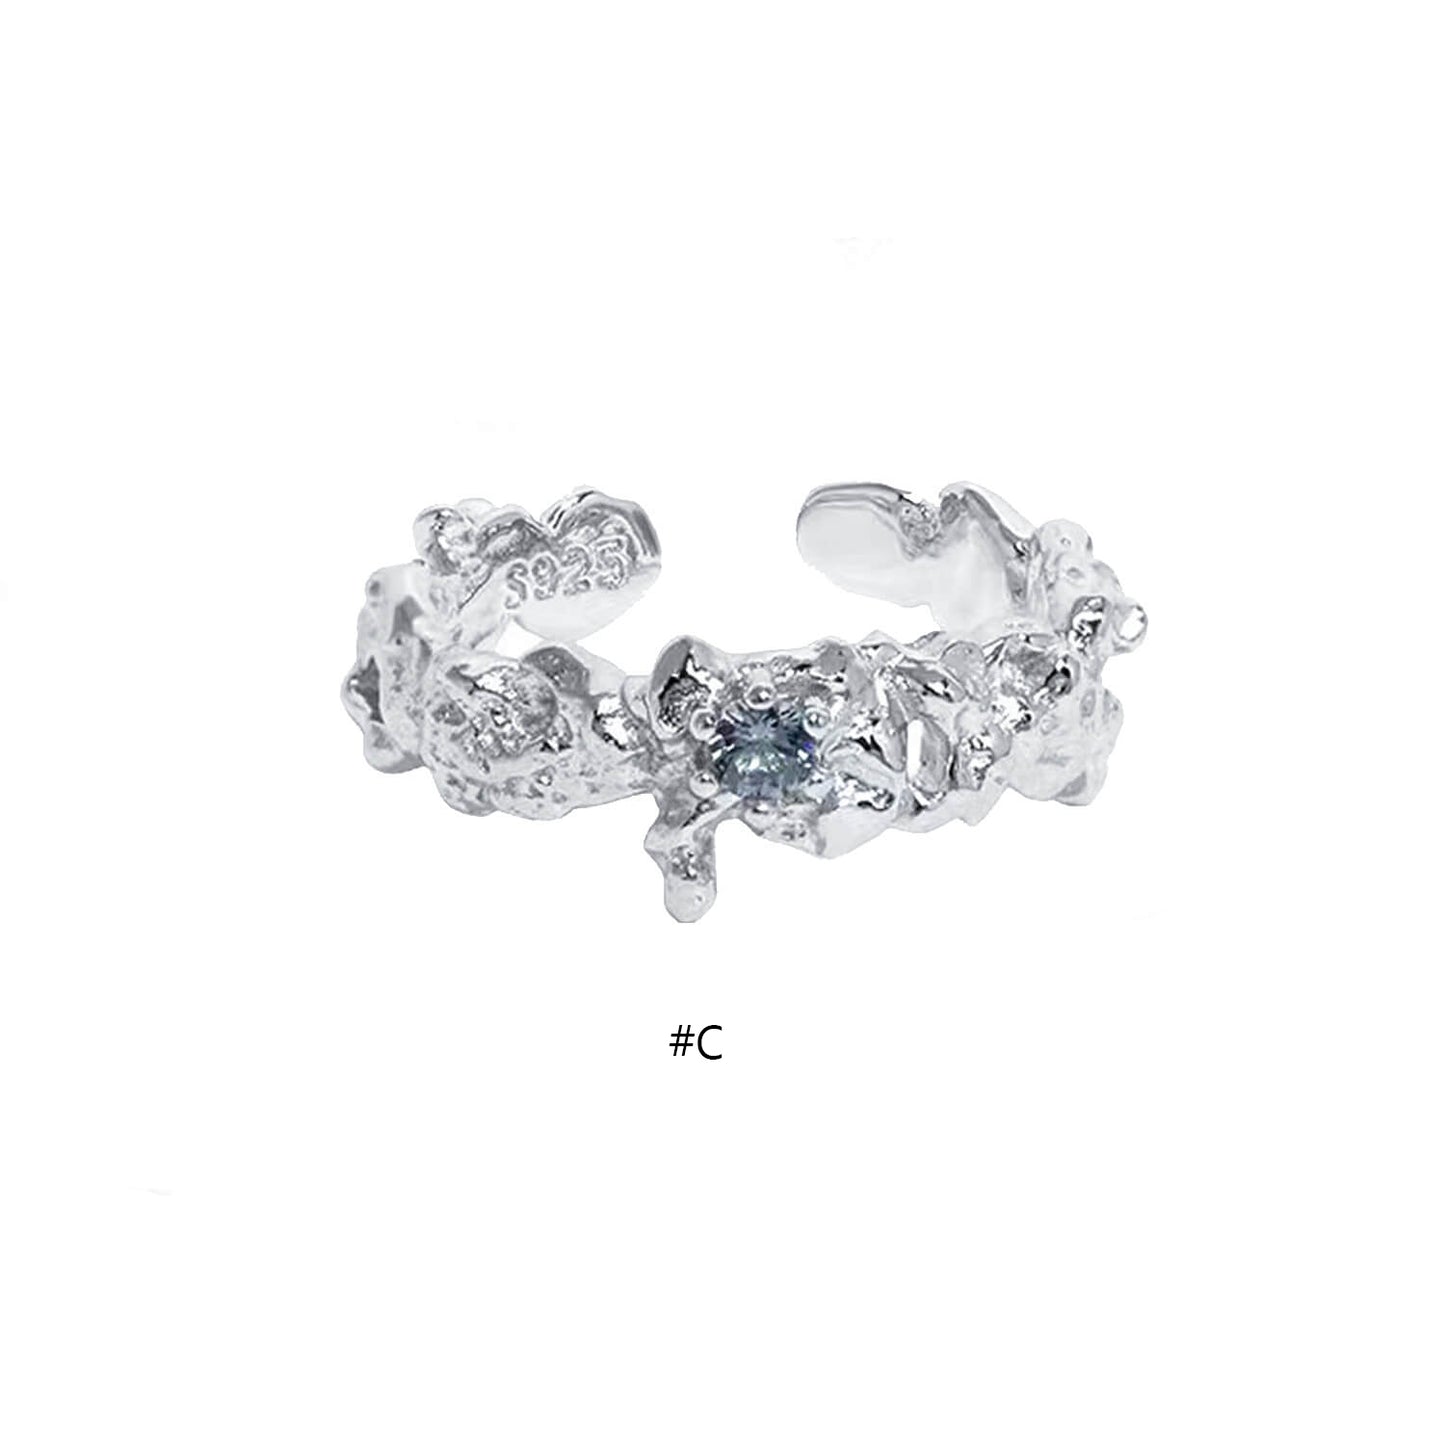 Gemstone Rings Silver Rings Neutral Jewelry | Buy at Khanie